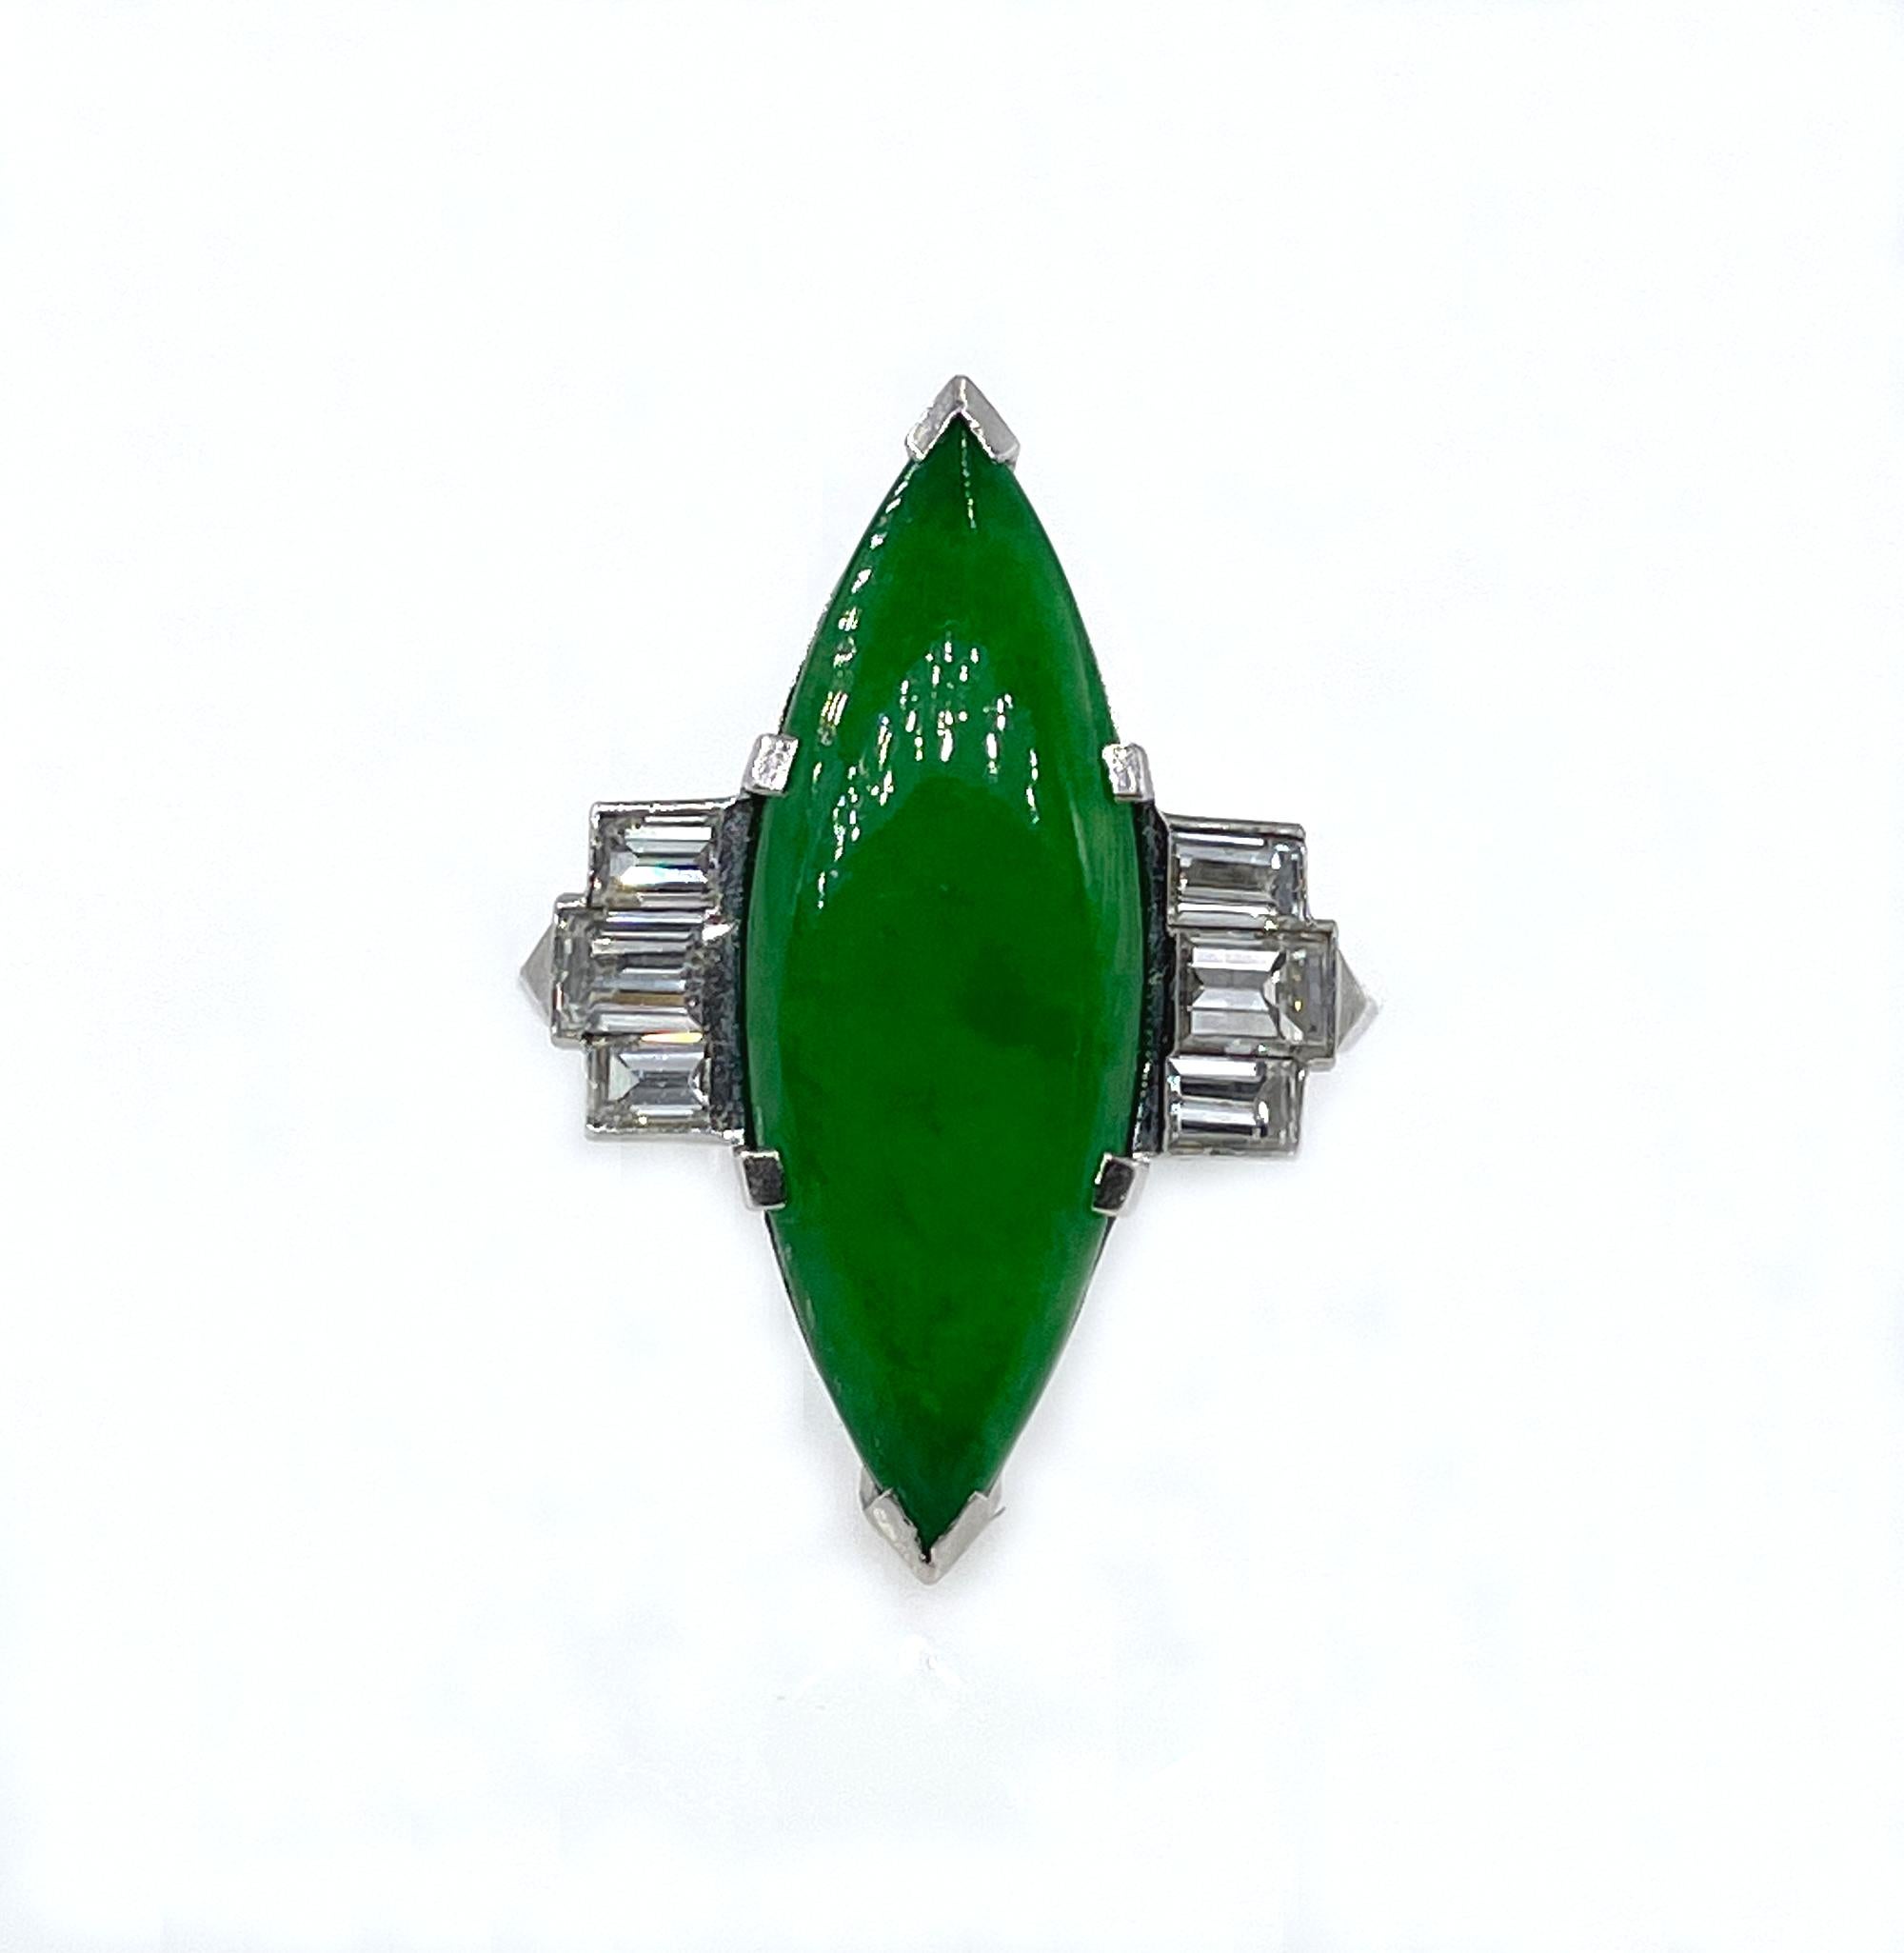 Bague Art déco en platine avec diamants et jade vert fait de jade naturel certifié GIA de 6,60 carats

e trois raisons principales pour choisir des JADEITE naturelles non traitées : elles sont belles, rares et super précieuses.
Si vous êtes à la